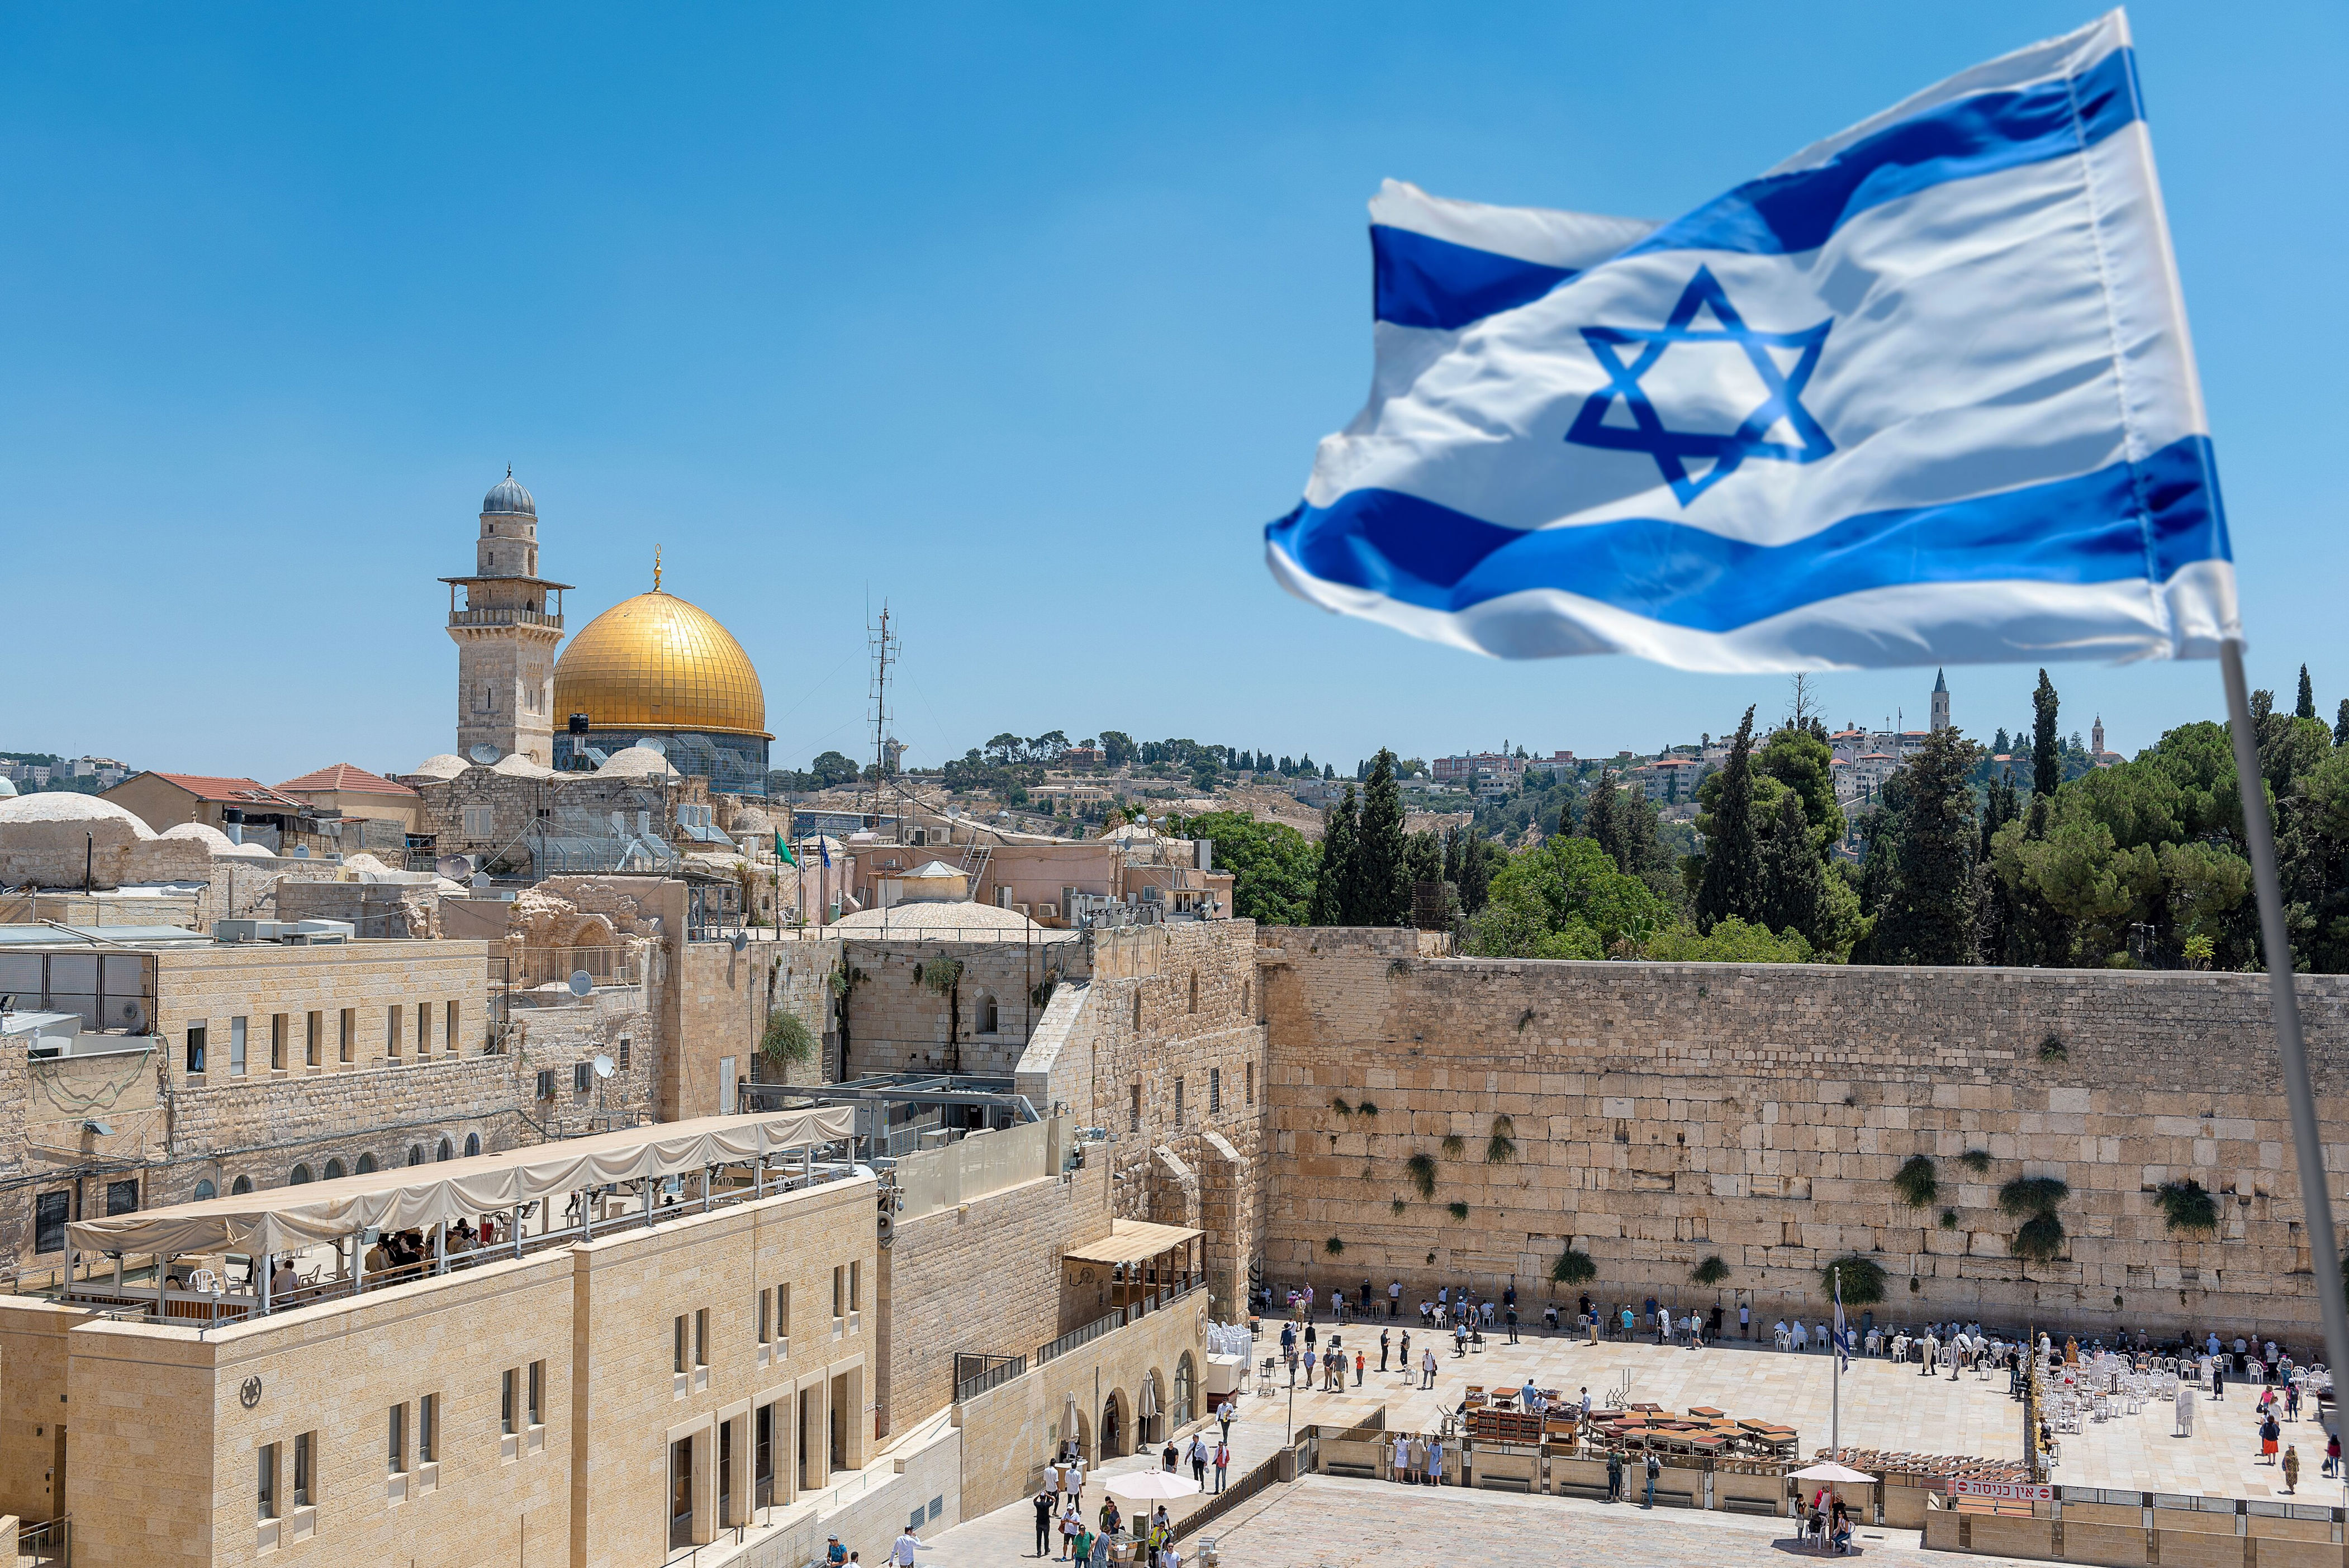 cancillería formaliza rompimiento de relaciones del gobierno petro con israel. habrá consecuencias incalculables y graves